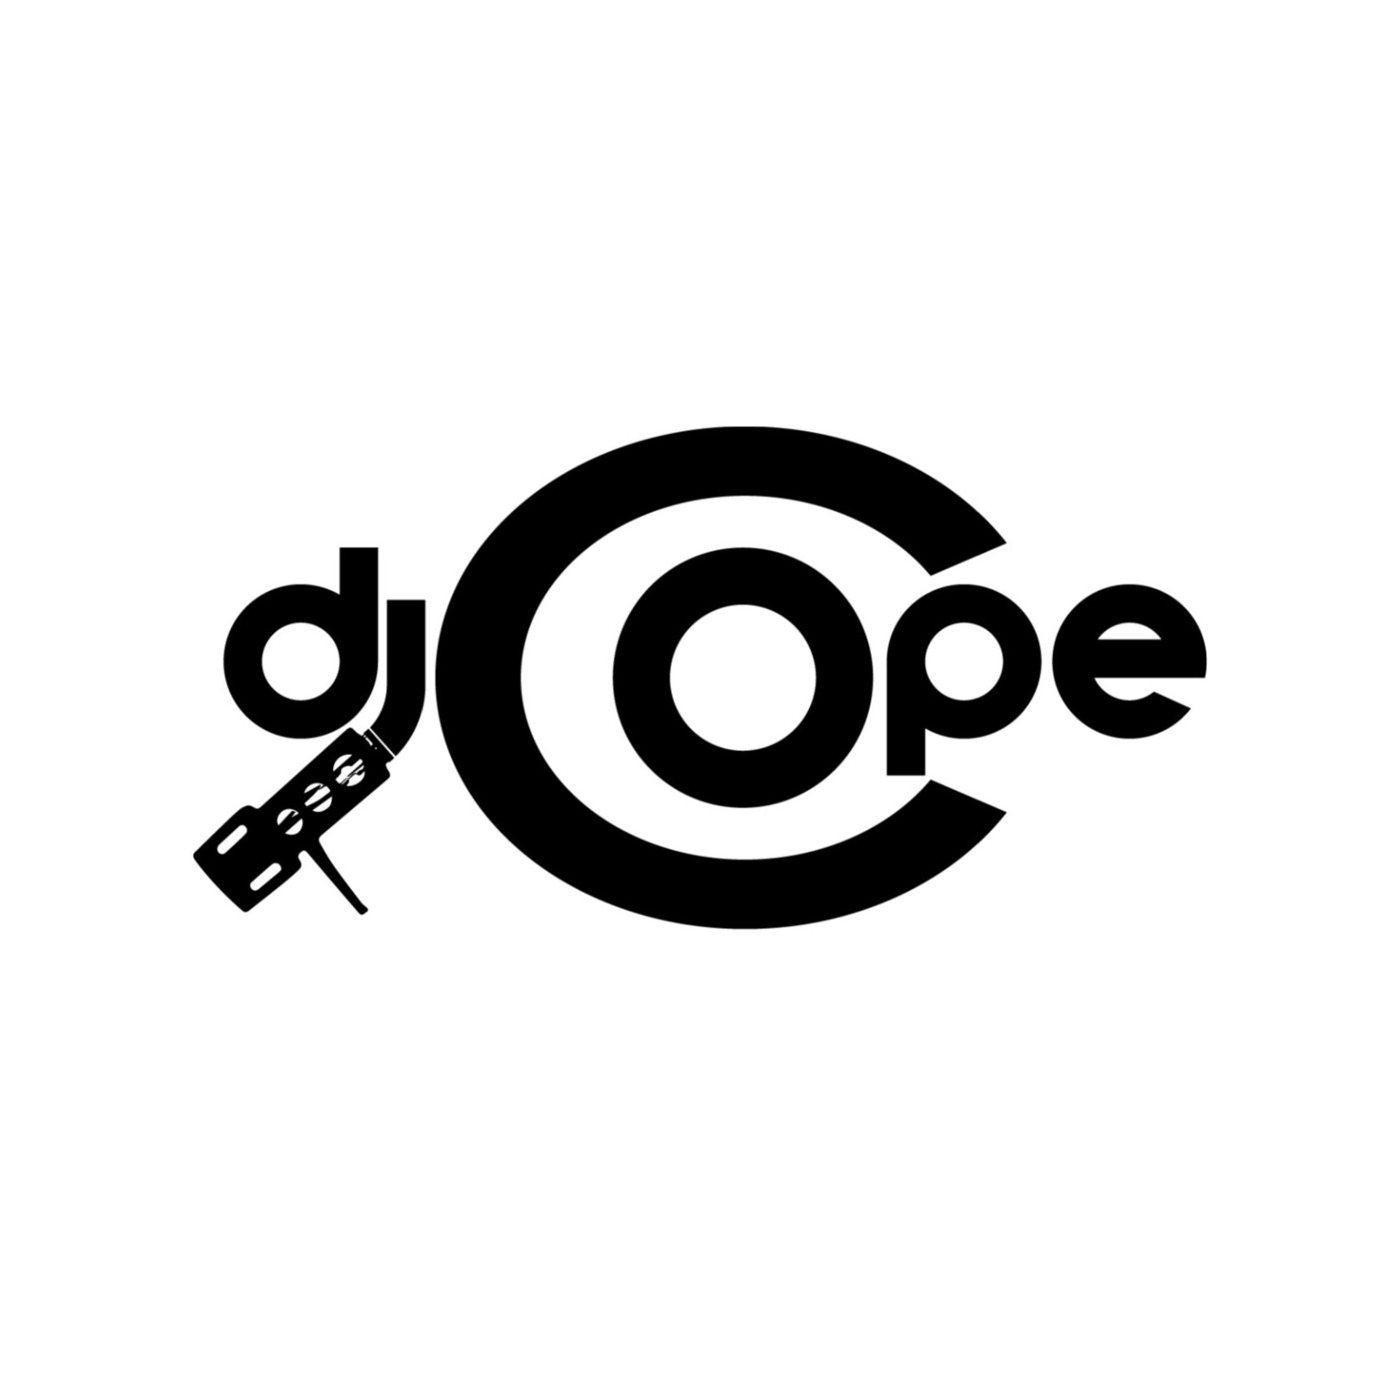 DJ COPE's Podcast